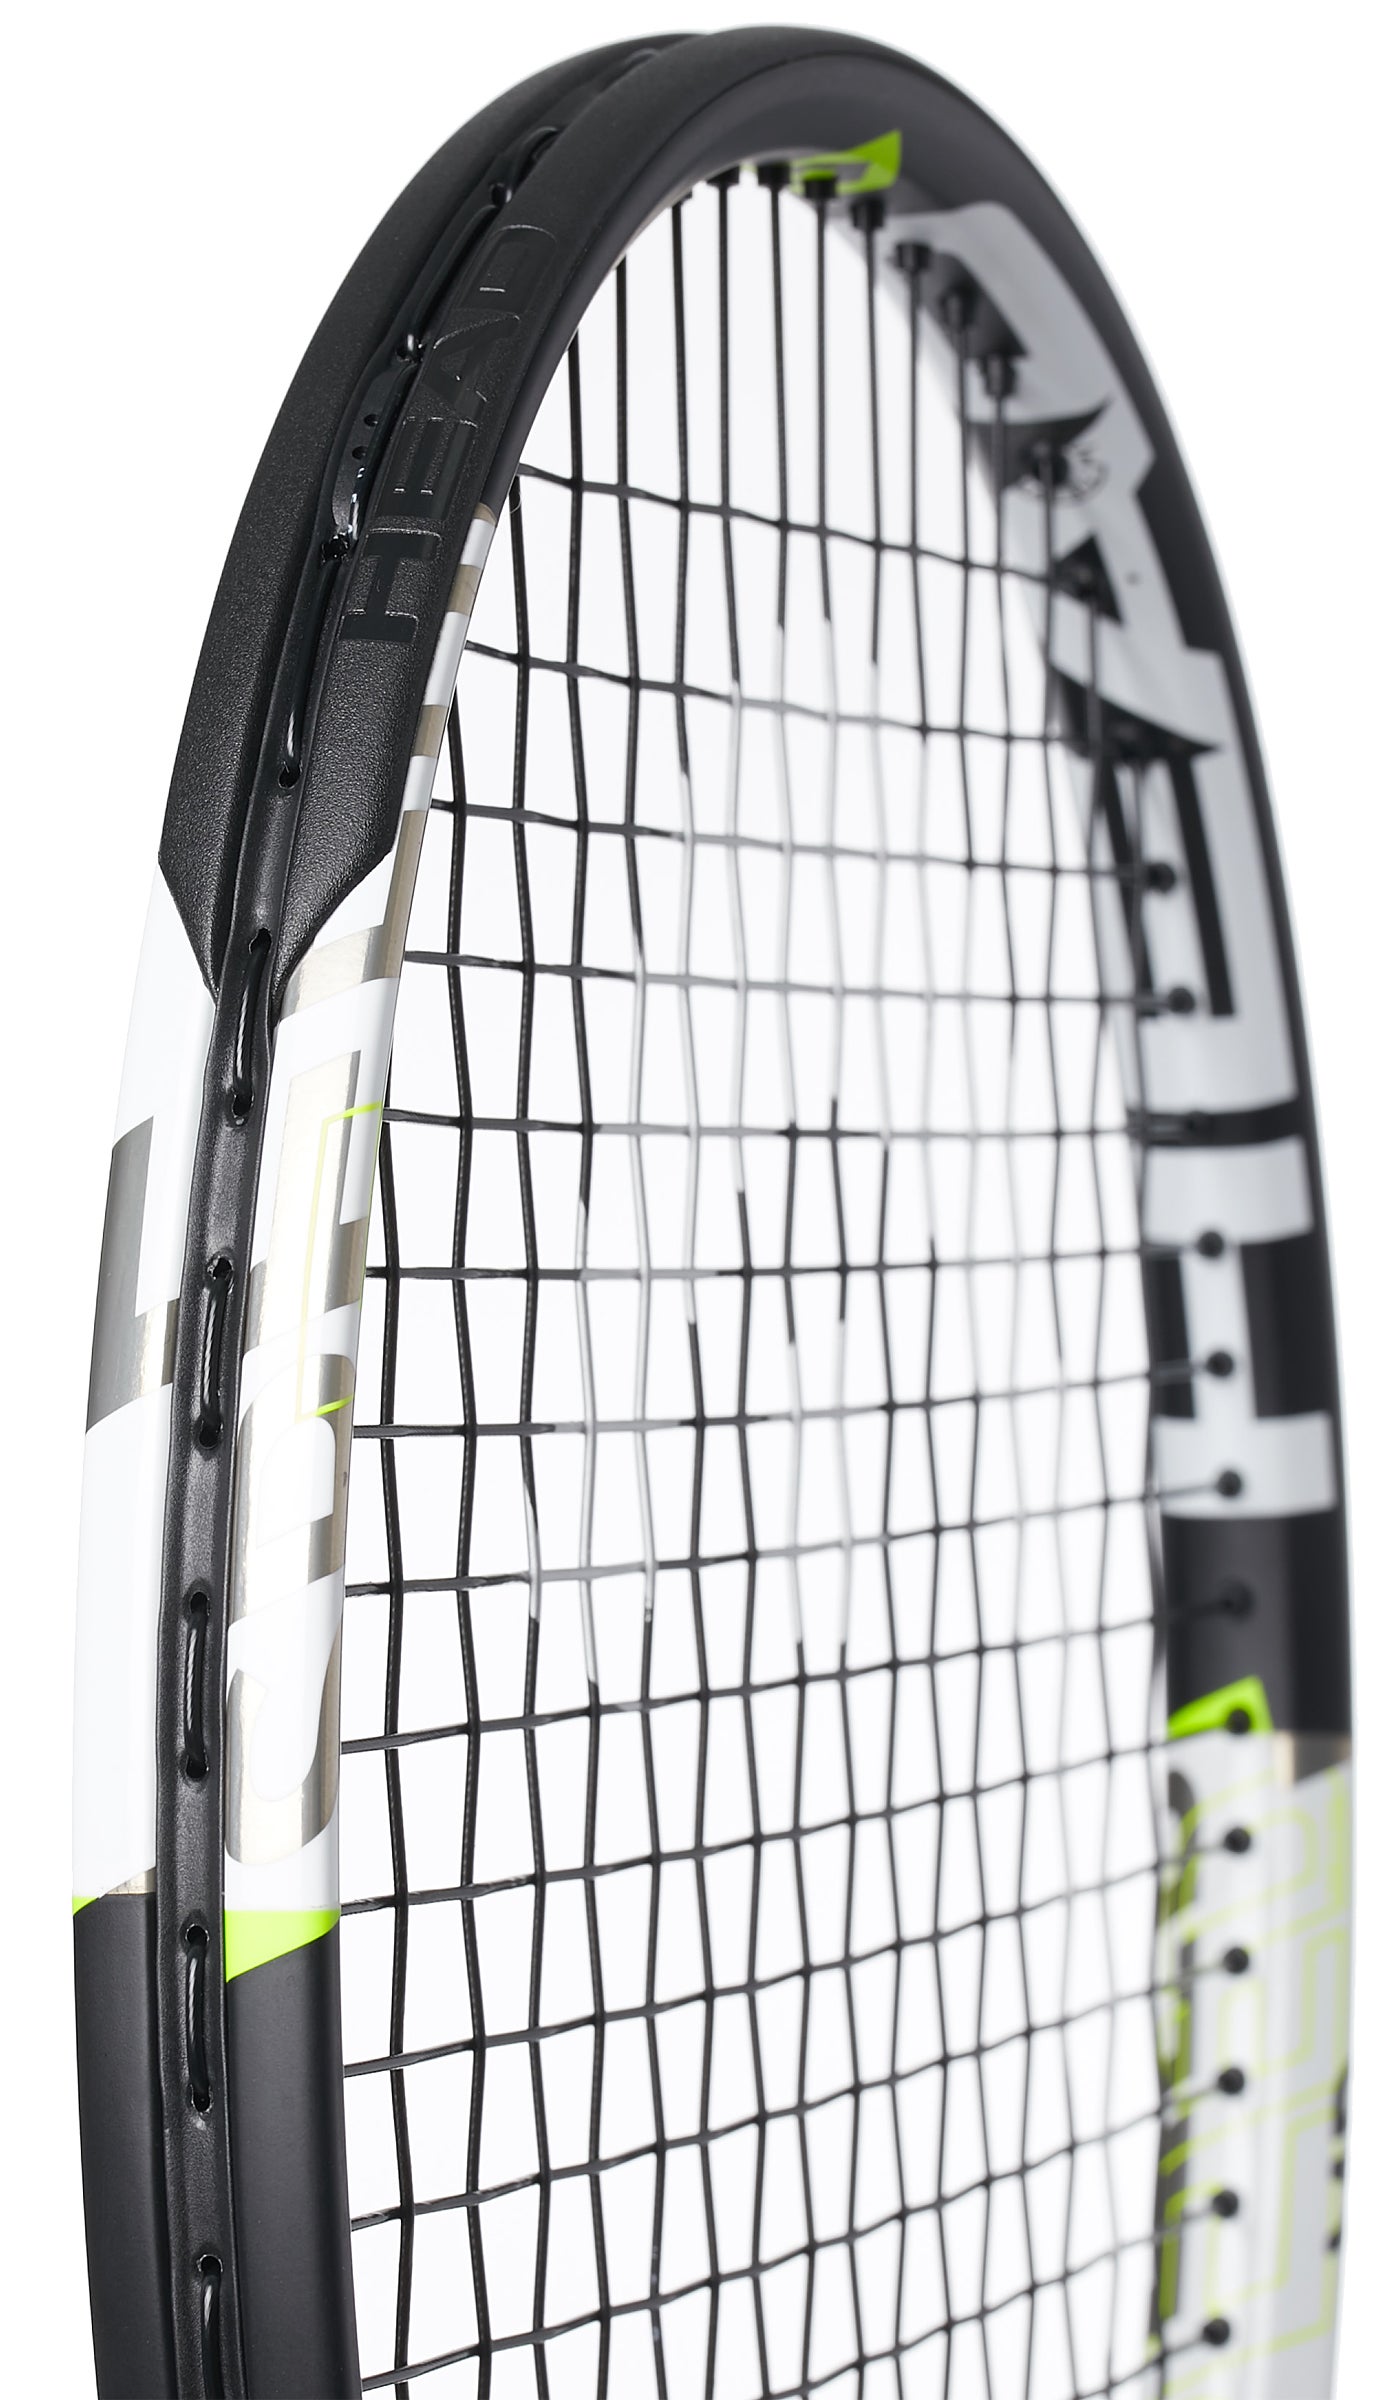 HEAD Graphene XT Speed MP Tennis Racquet Classic Model 